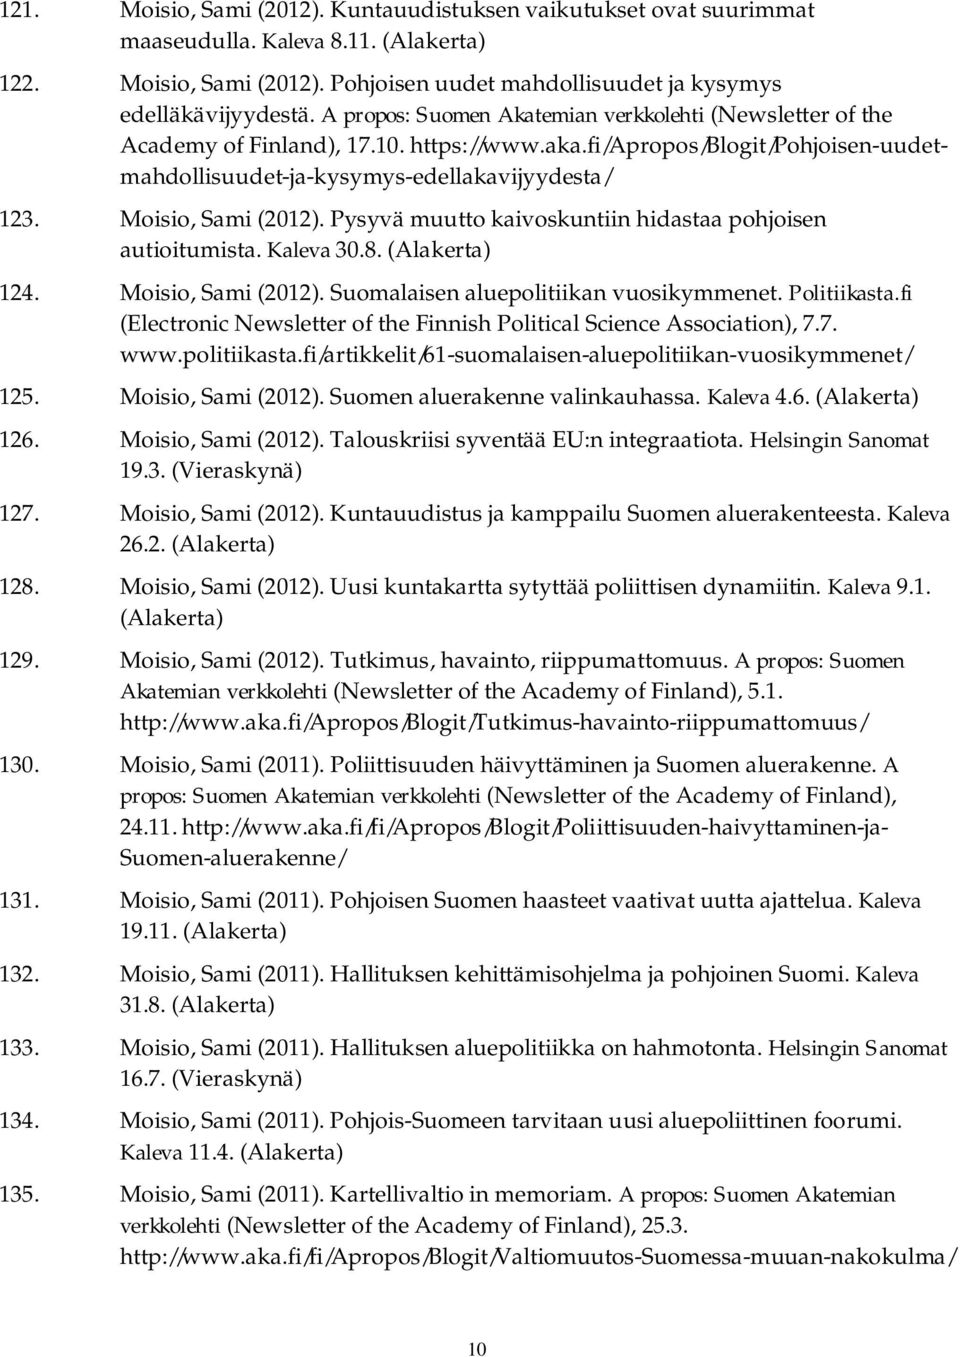 Moisio, Sami (2012). Pysyvä muutto kaivoskuntiin hidastaa pohjoisen autioitumista. Kaleva 30.8. 124. Moisio, Sami (2012). Suomalaisen aluepolitiikan vuosikymmenet. Politiikasta.